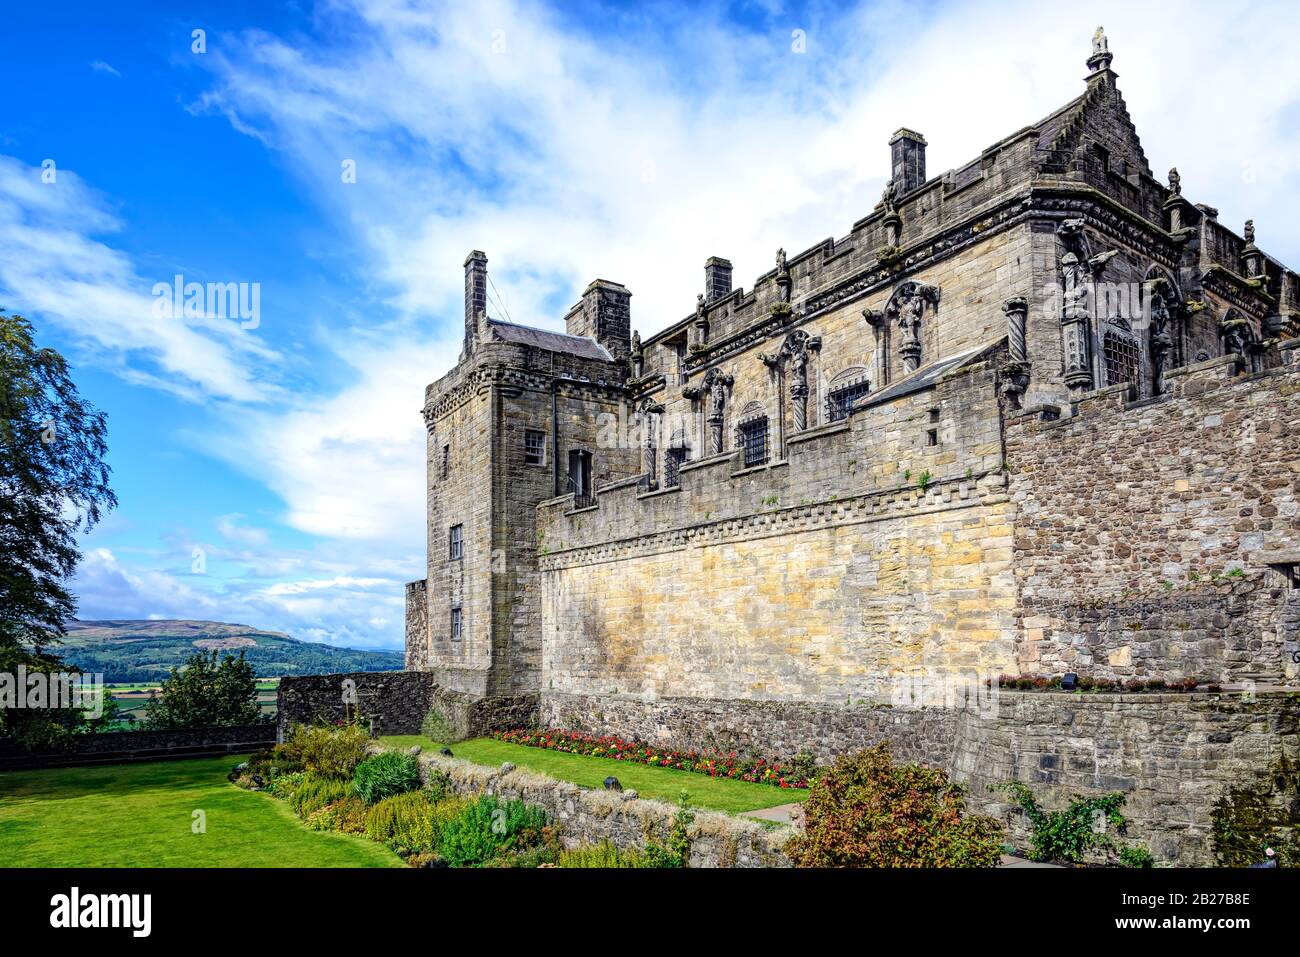 Jardin de la reine Anne et Palais Royal au château de Stirling, en Écosse. Situé à Stirling, est l'un des châteaux les plus importants et les plus importants d'Écosse Banque D'Images